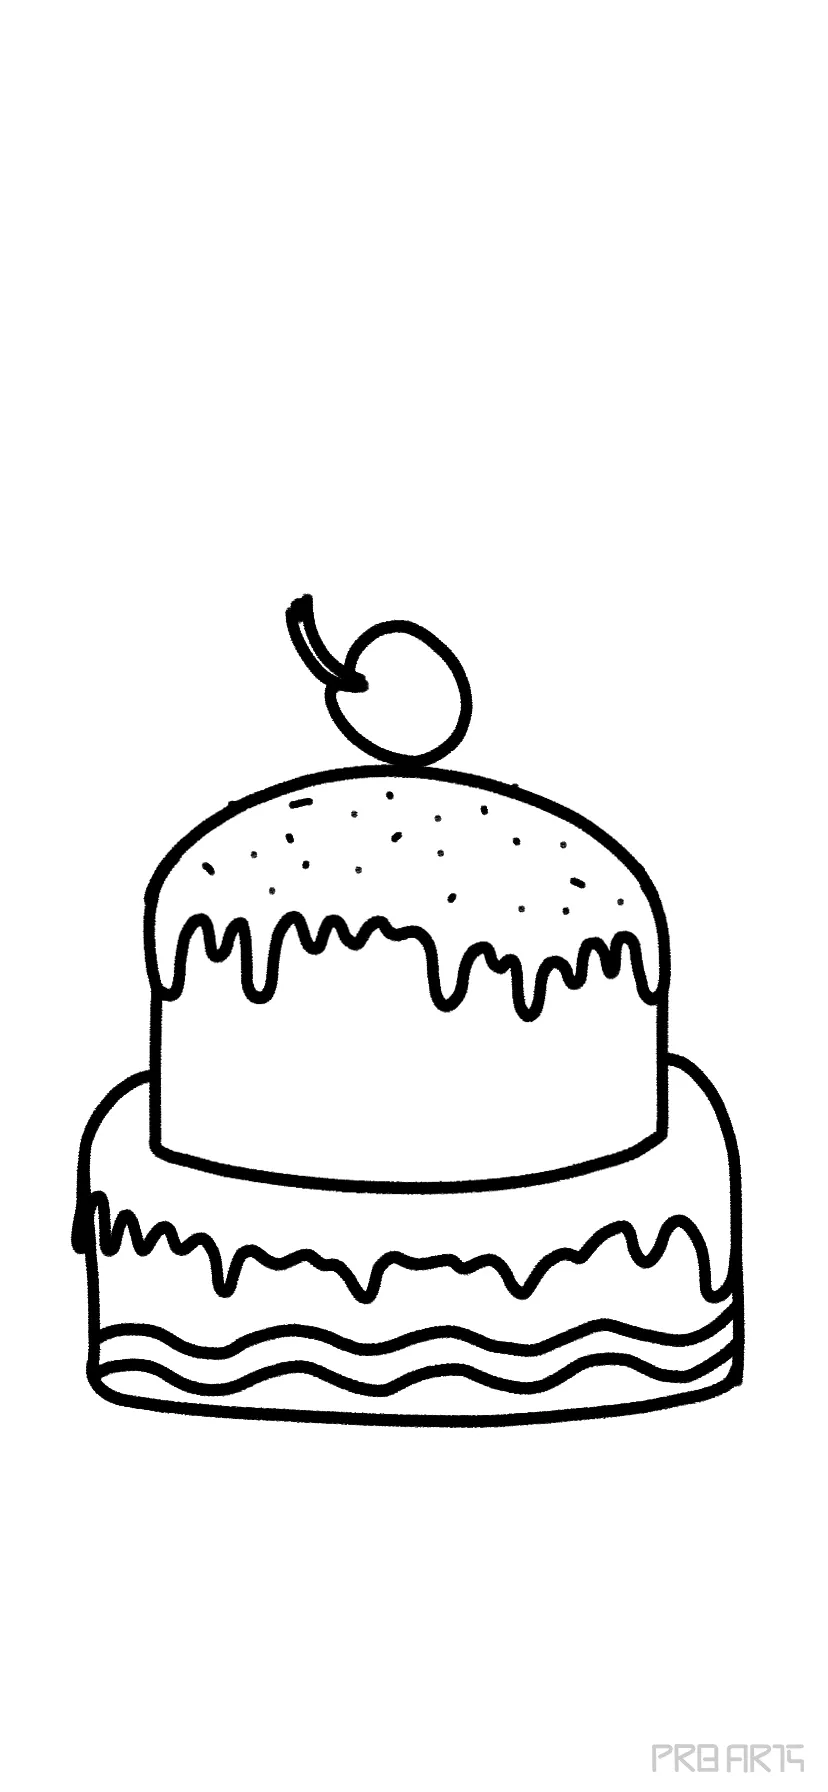 How To Draw A Cute Birthday Cake | Art For Kids Hub-saigonsouth.com.vn